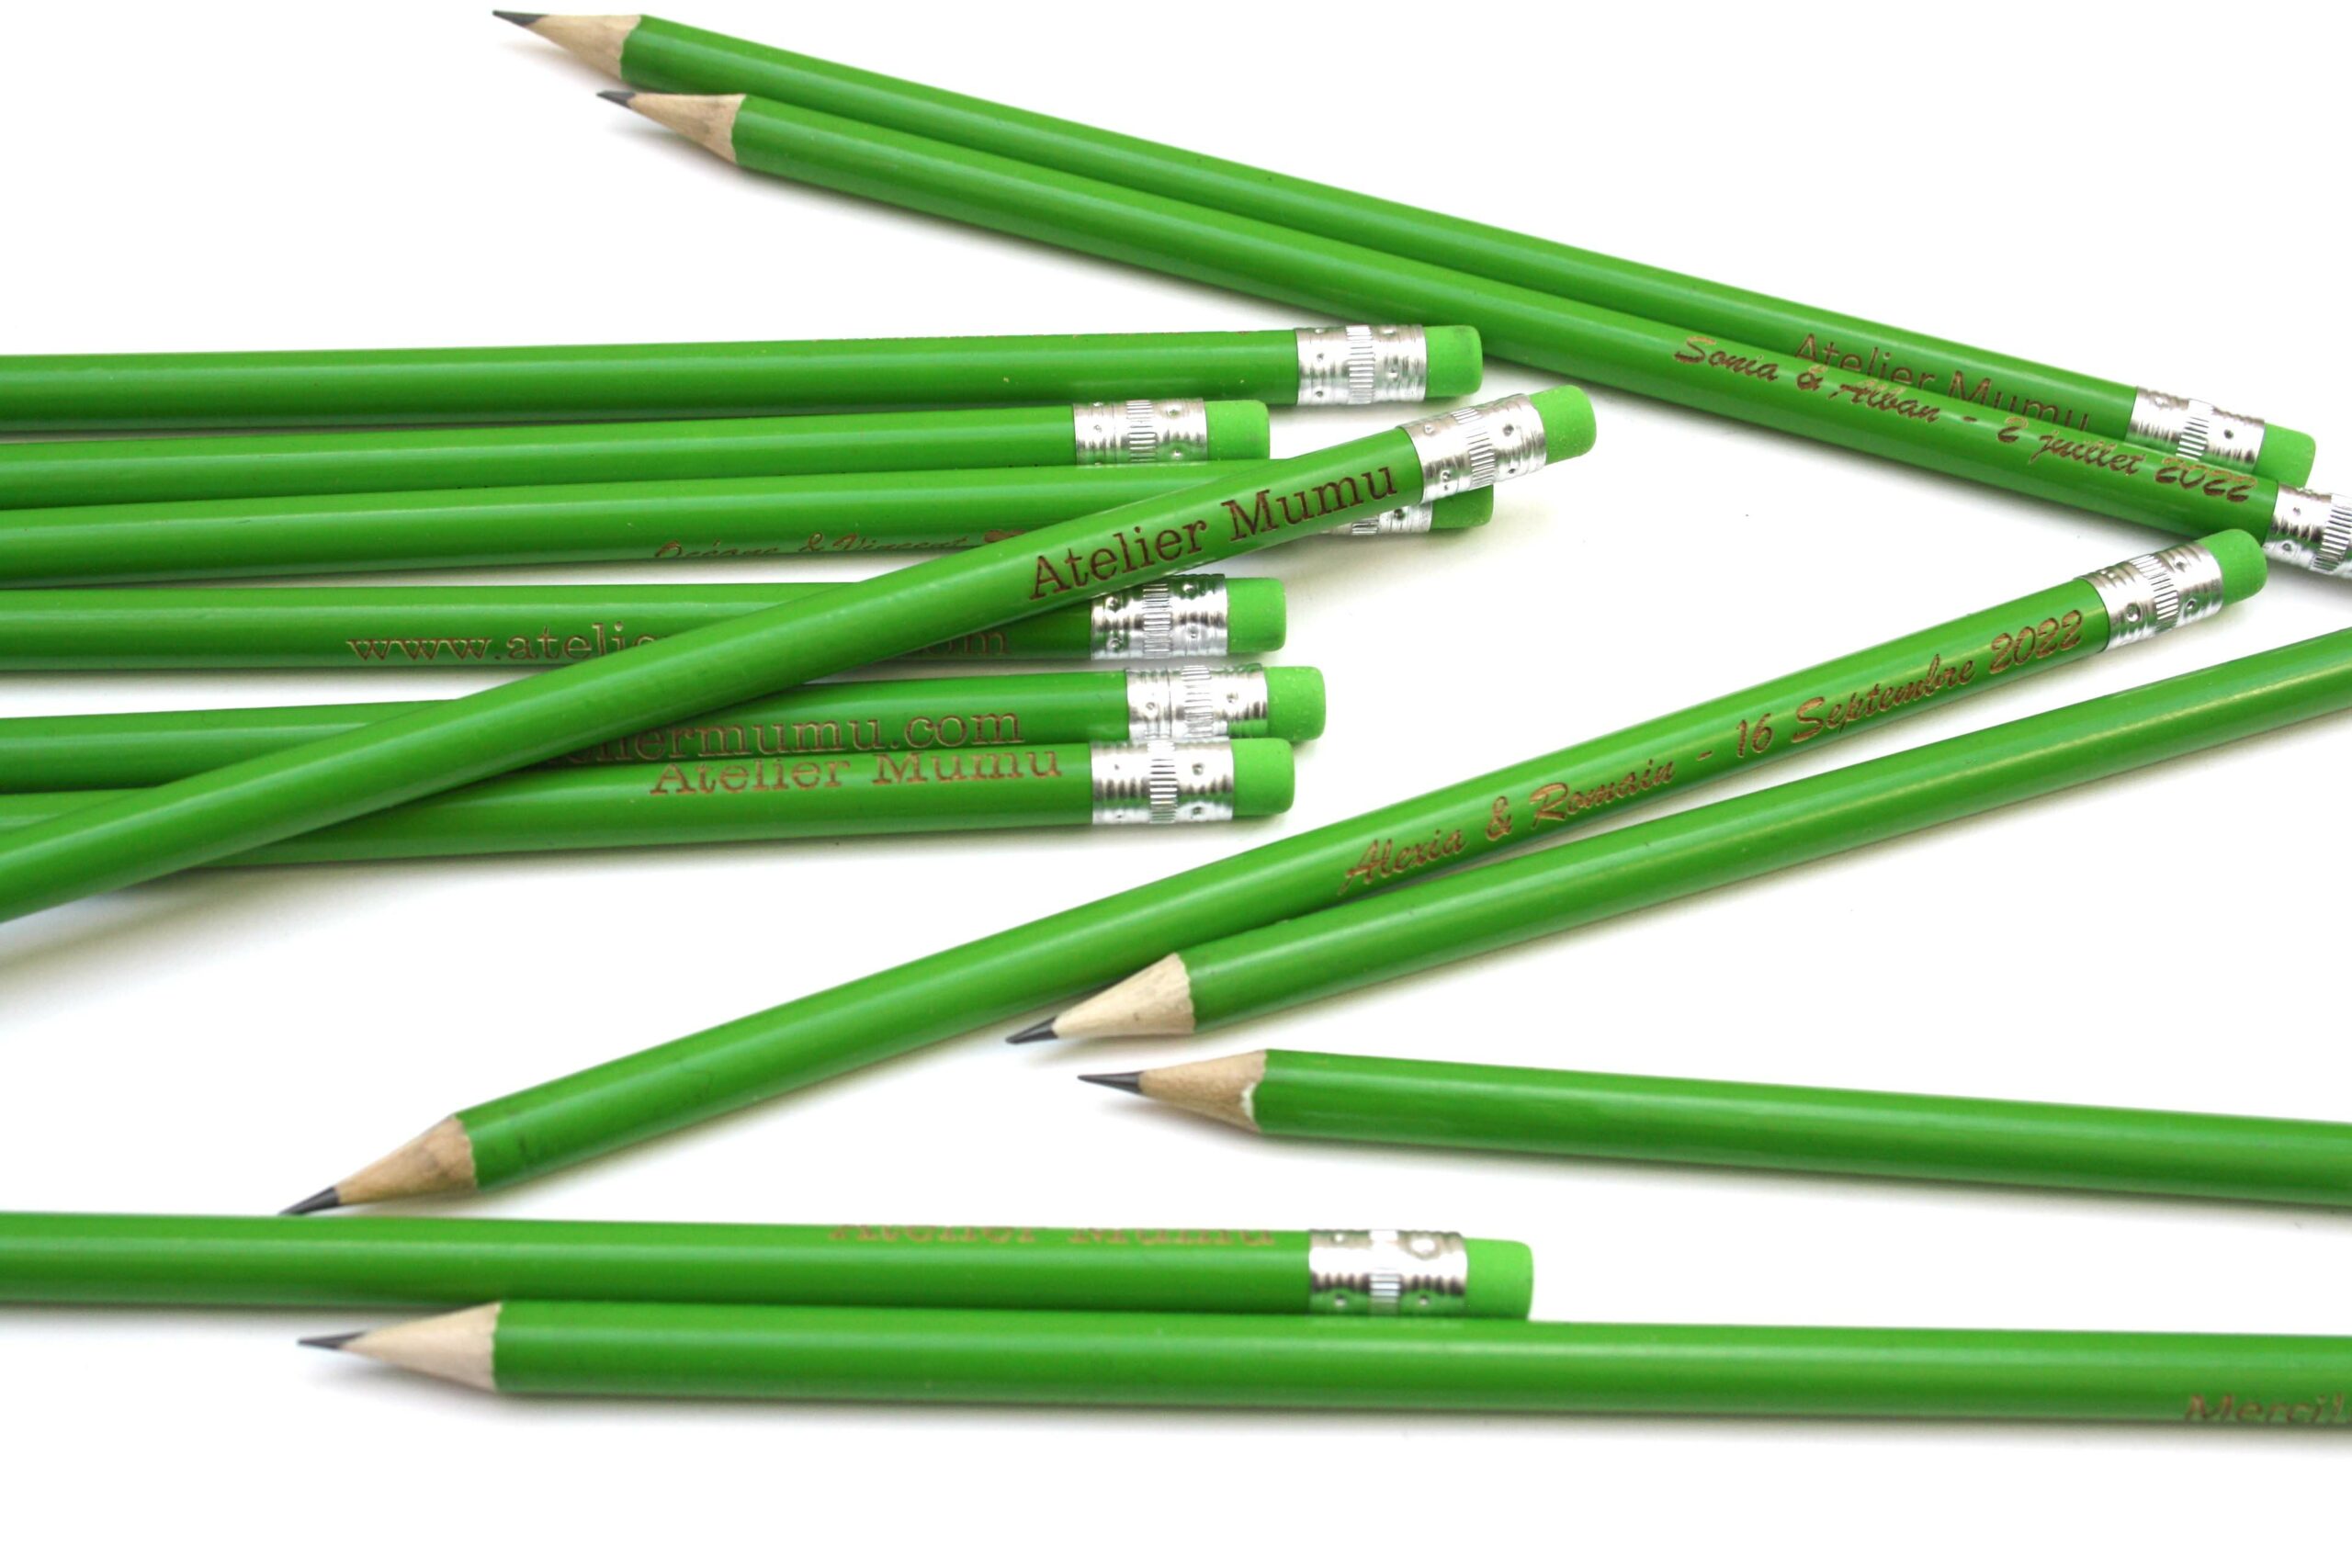 x 1 crayon à papier personnalisé en bois. Cadeau ou échantillon, gomme  verte - Atelier Mumu